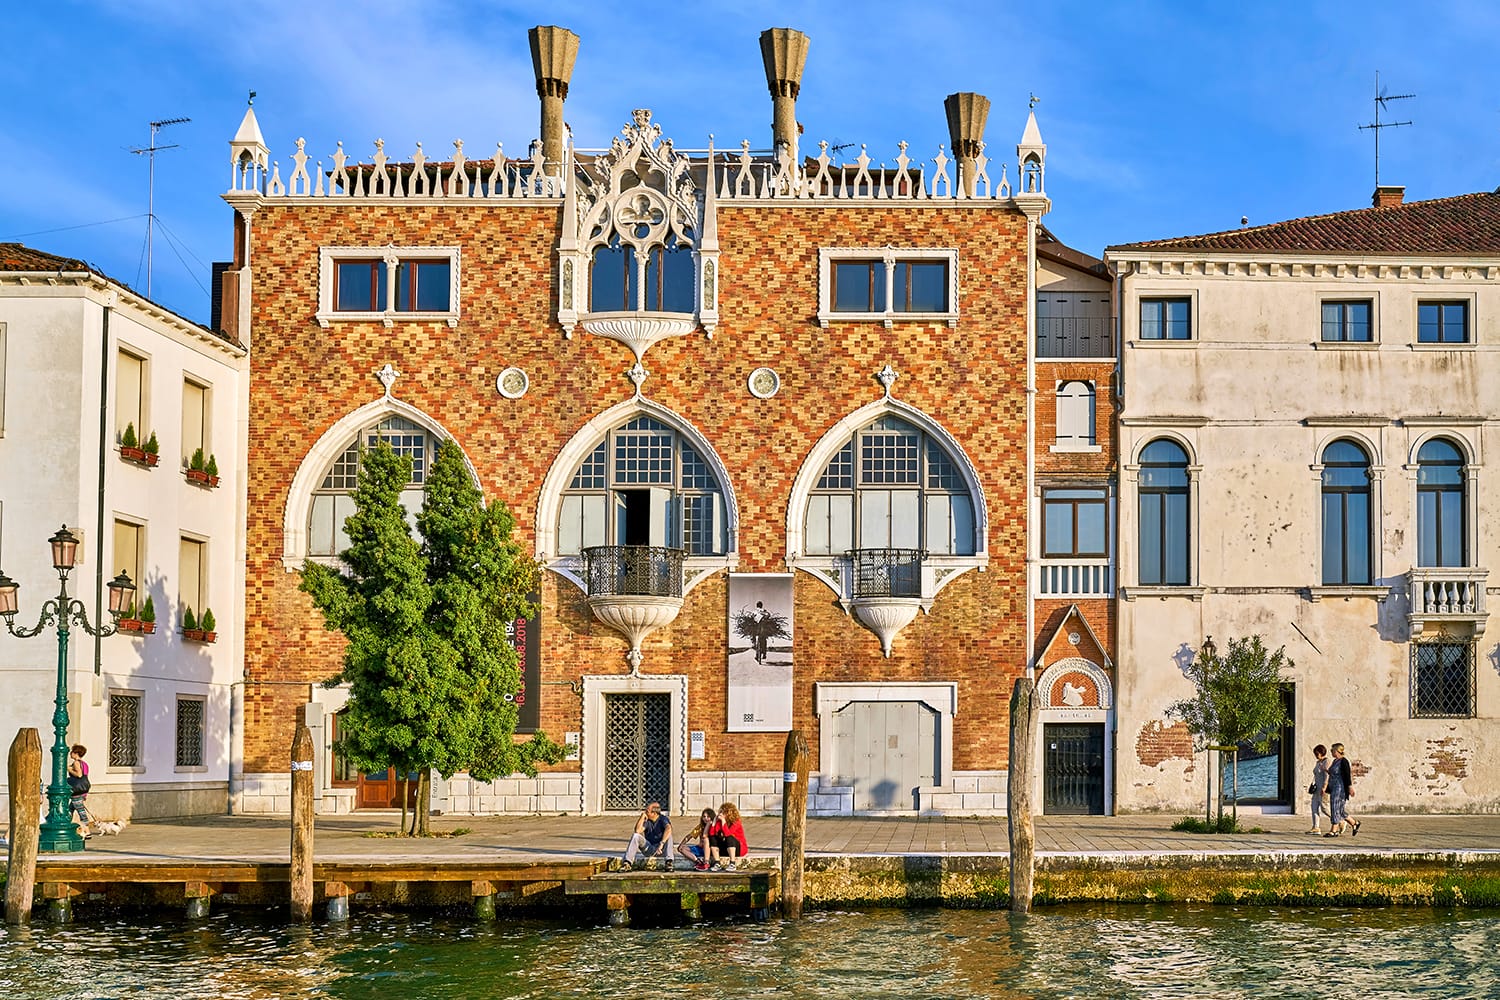 Casa dei Tre Oci in Venice, Italy